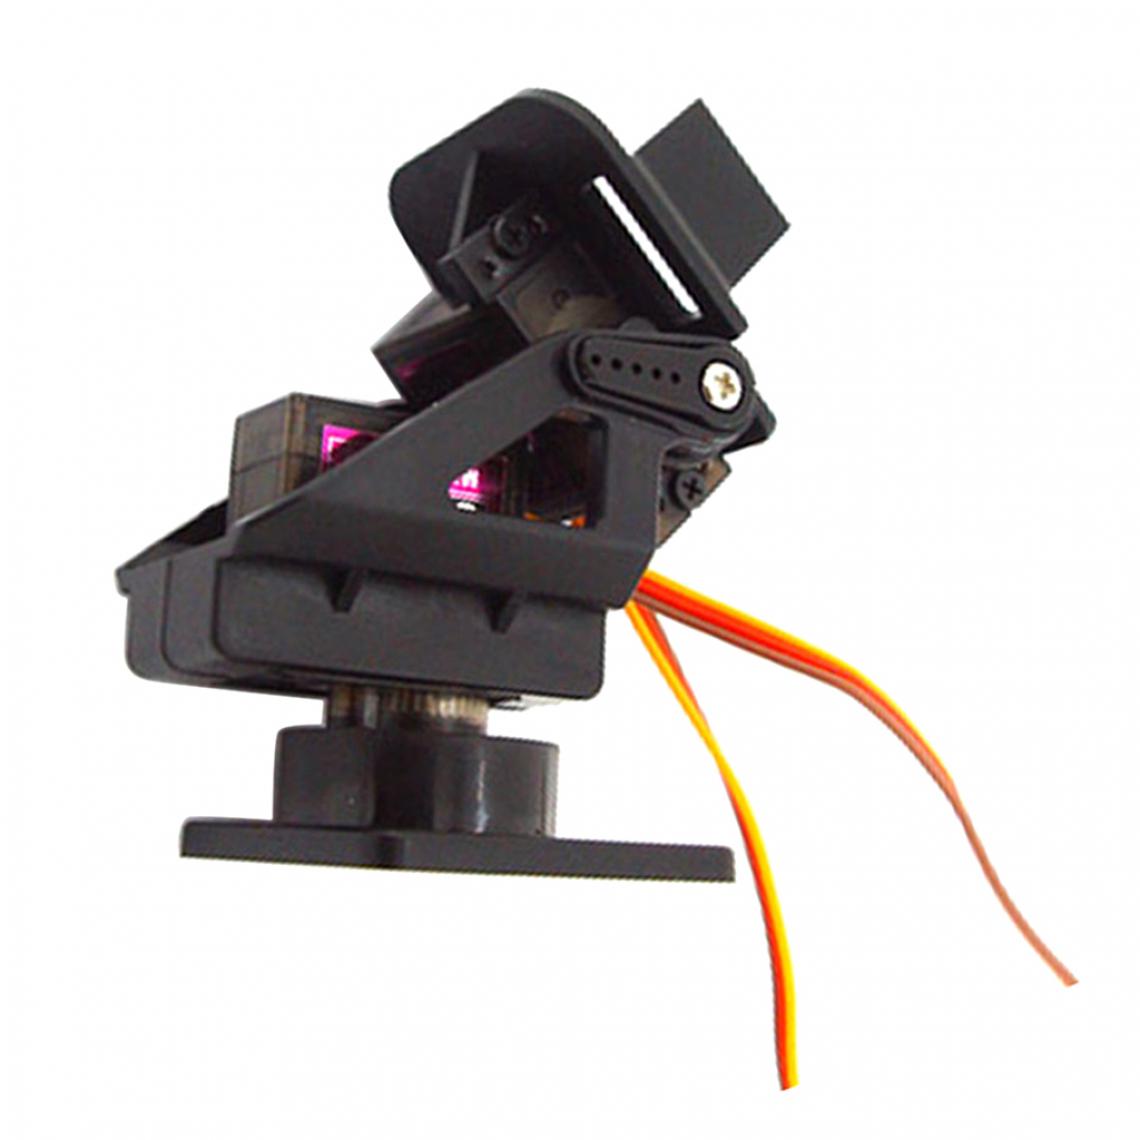 marque generique - Plate-forme de montage pour caméra Servo Pan Tilt anti-vibration pour le paquet B de FPV - Ampli